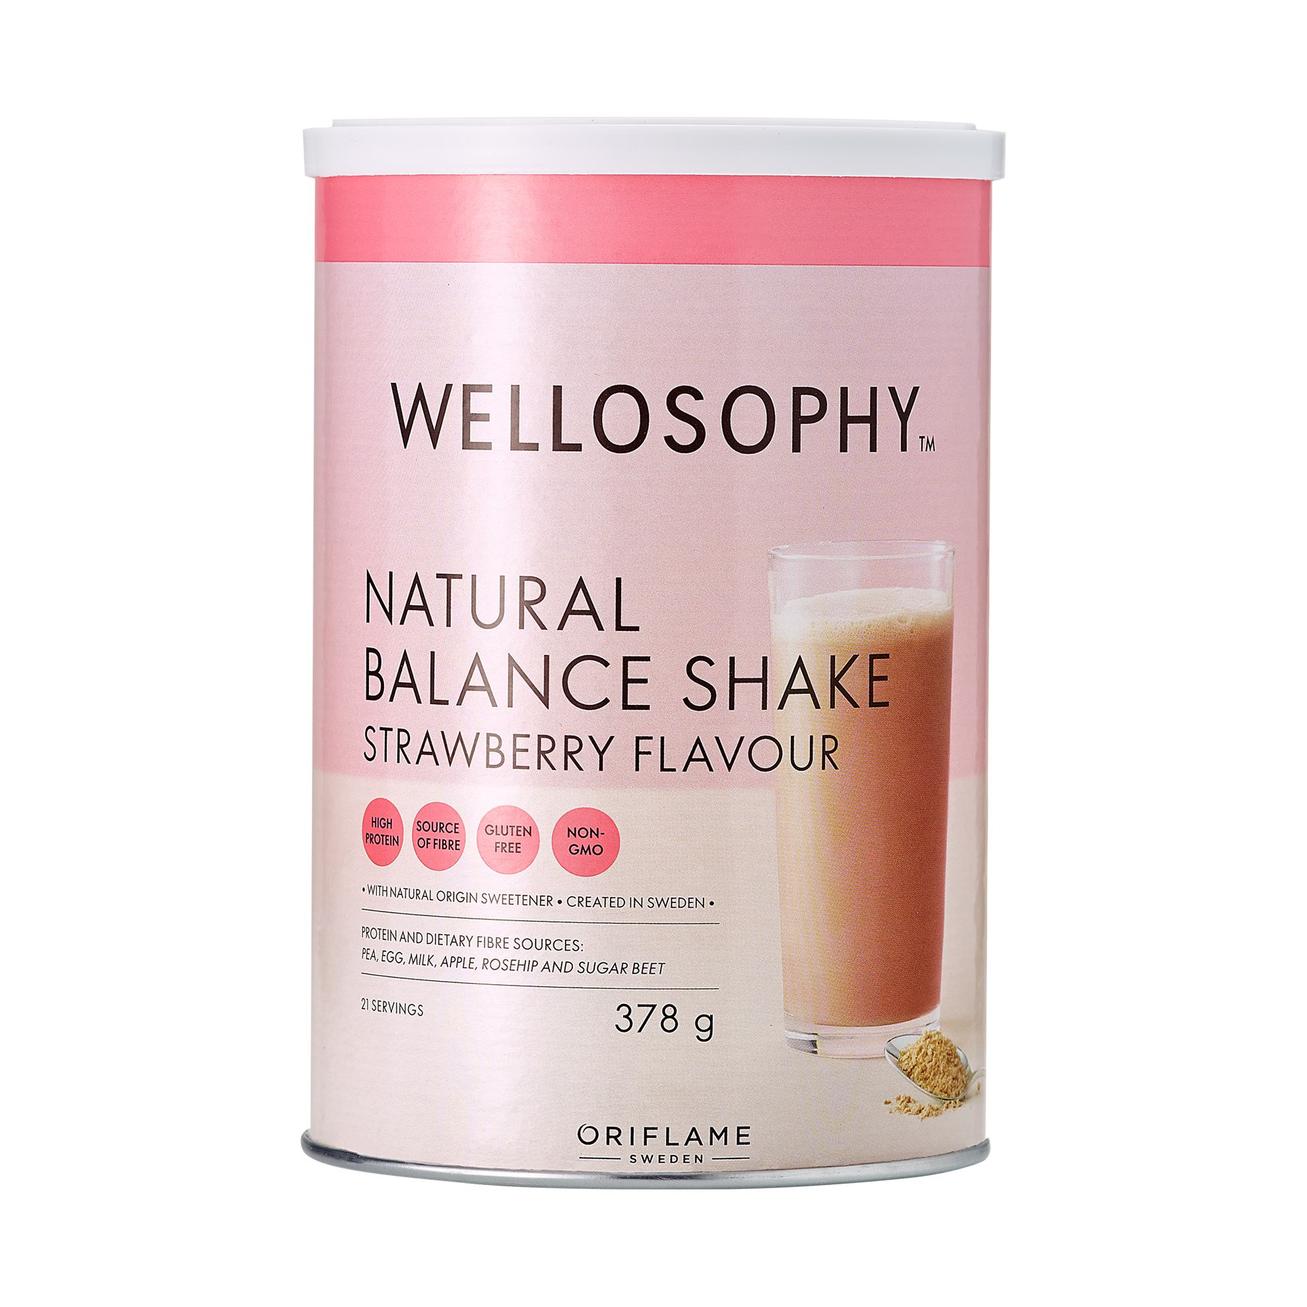 Natural Balance Shake Strawberry Flavour för 499 kr på Oriflame